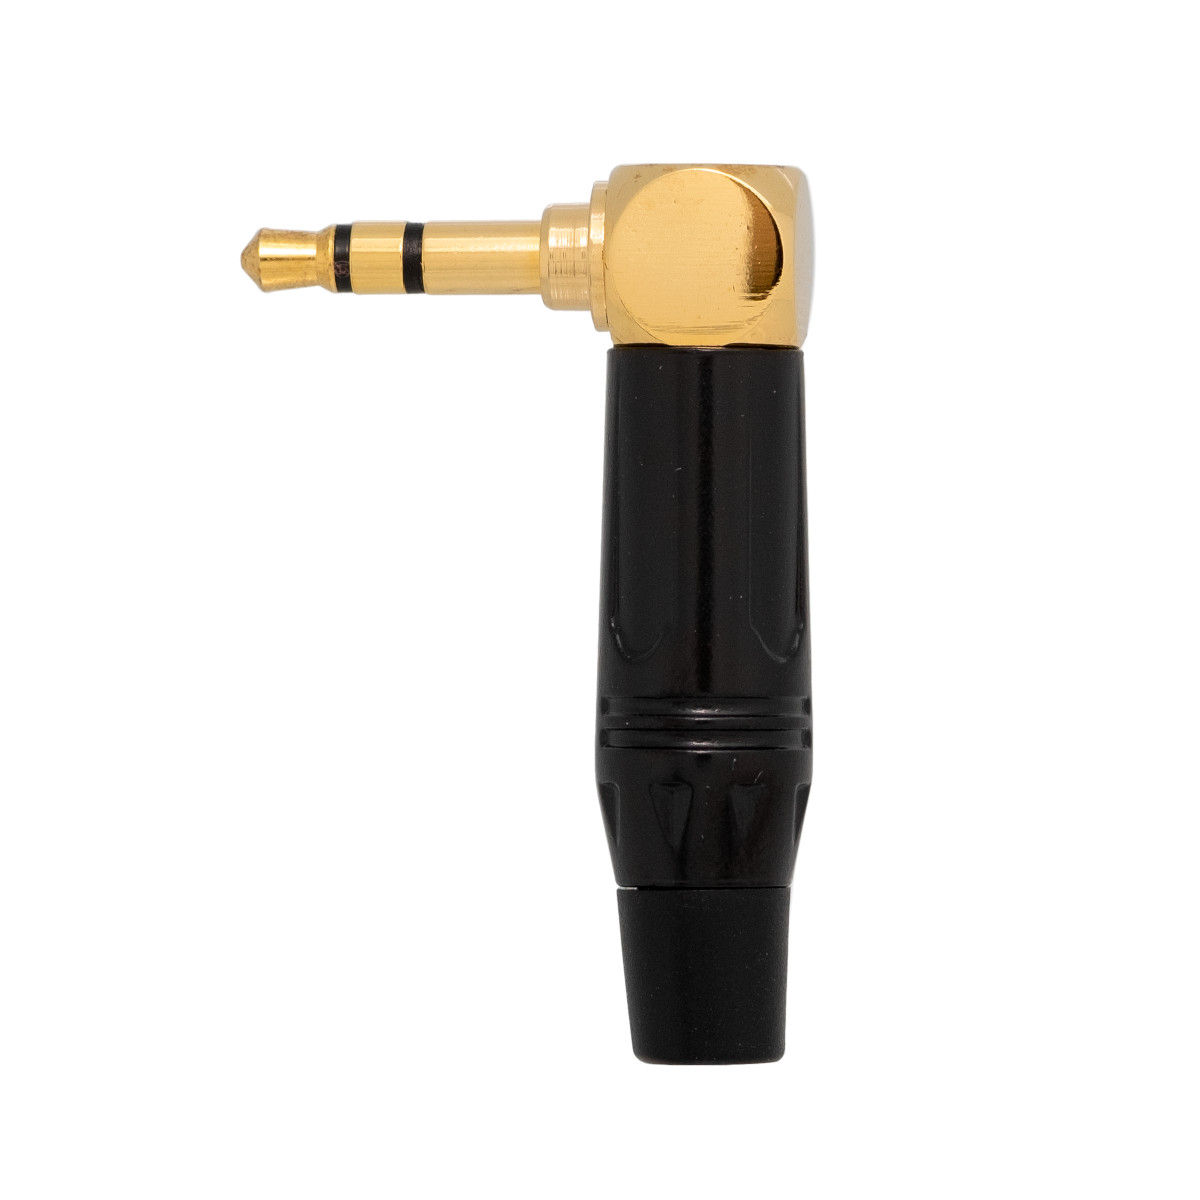 Conector Jack 3.5mm 3cont. dorado acodado  - manguito negro